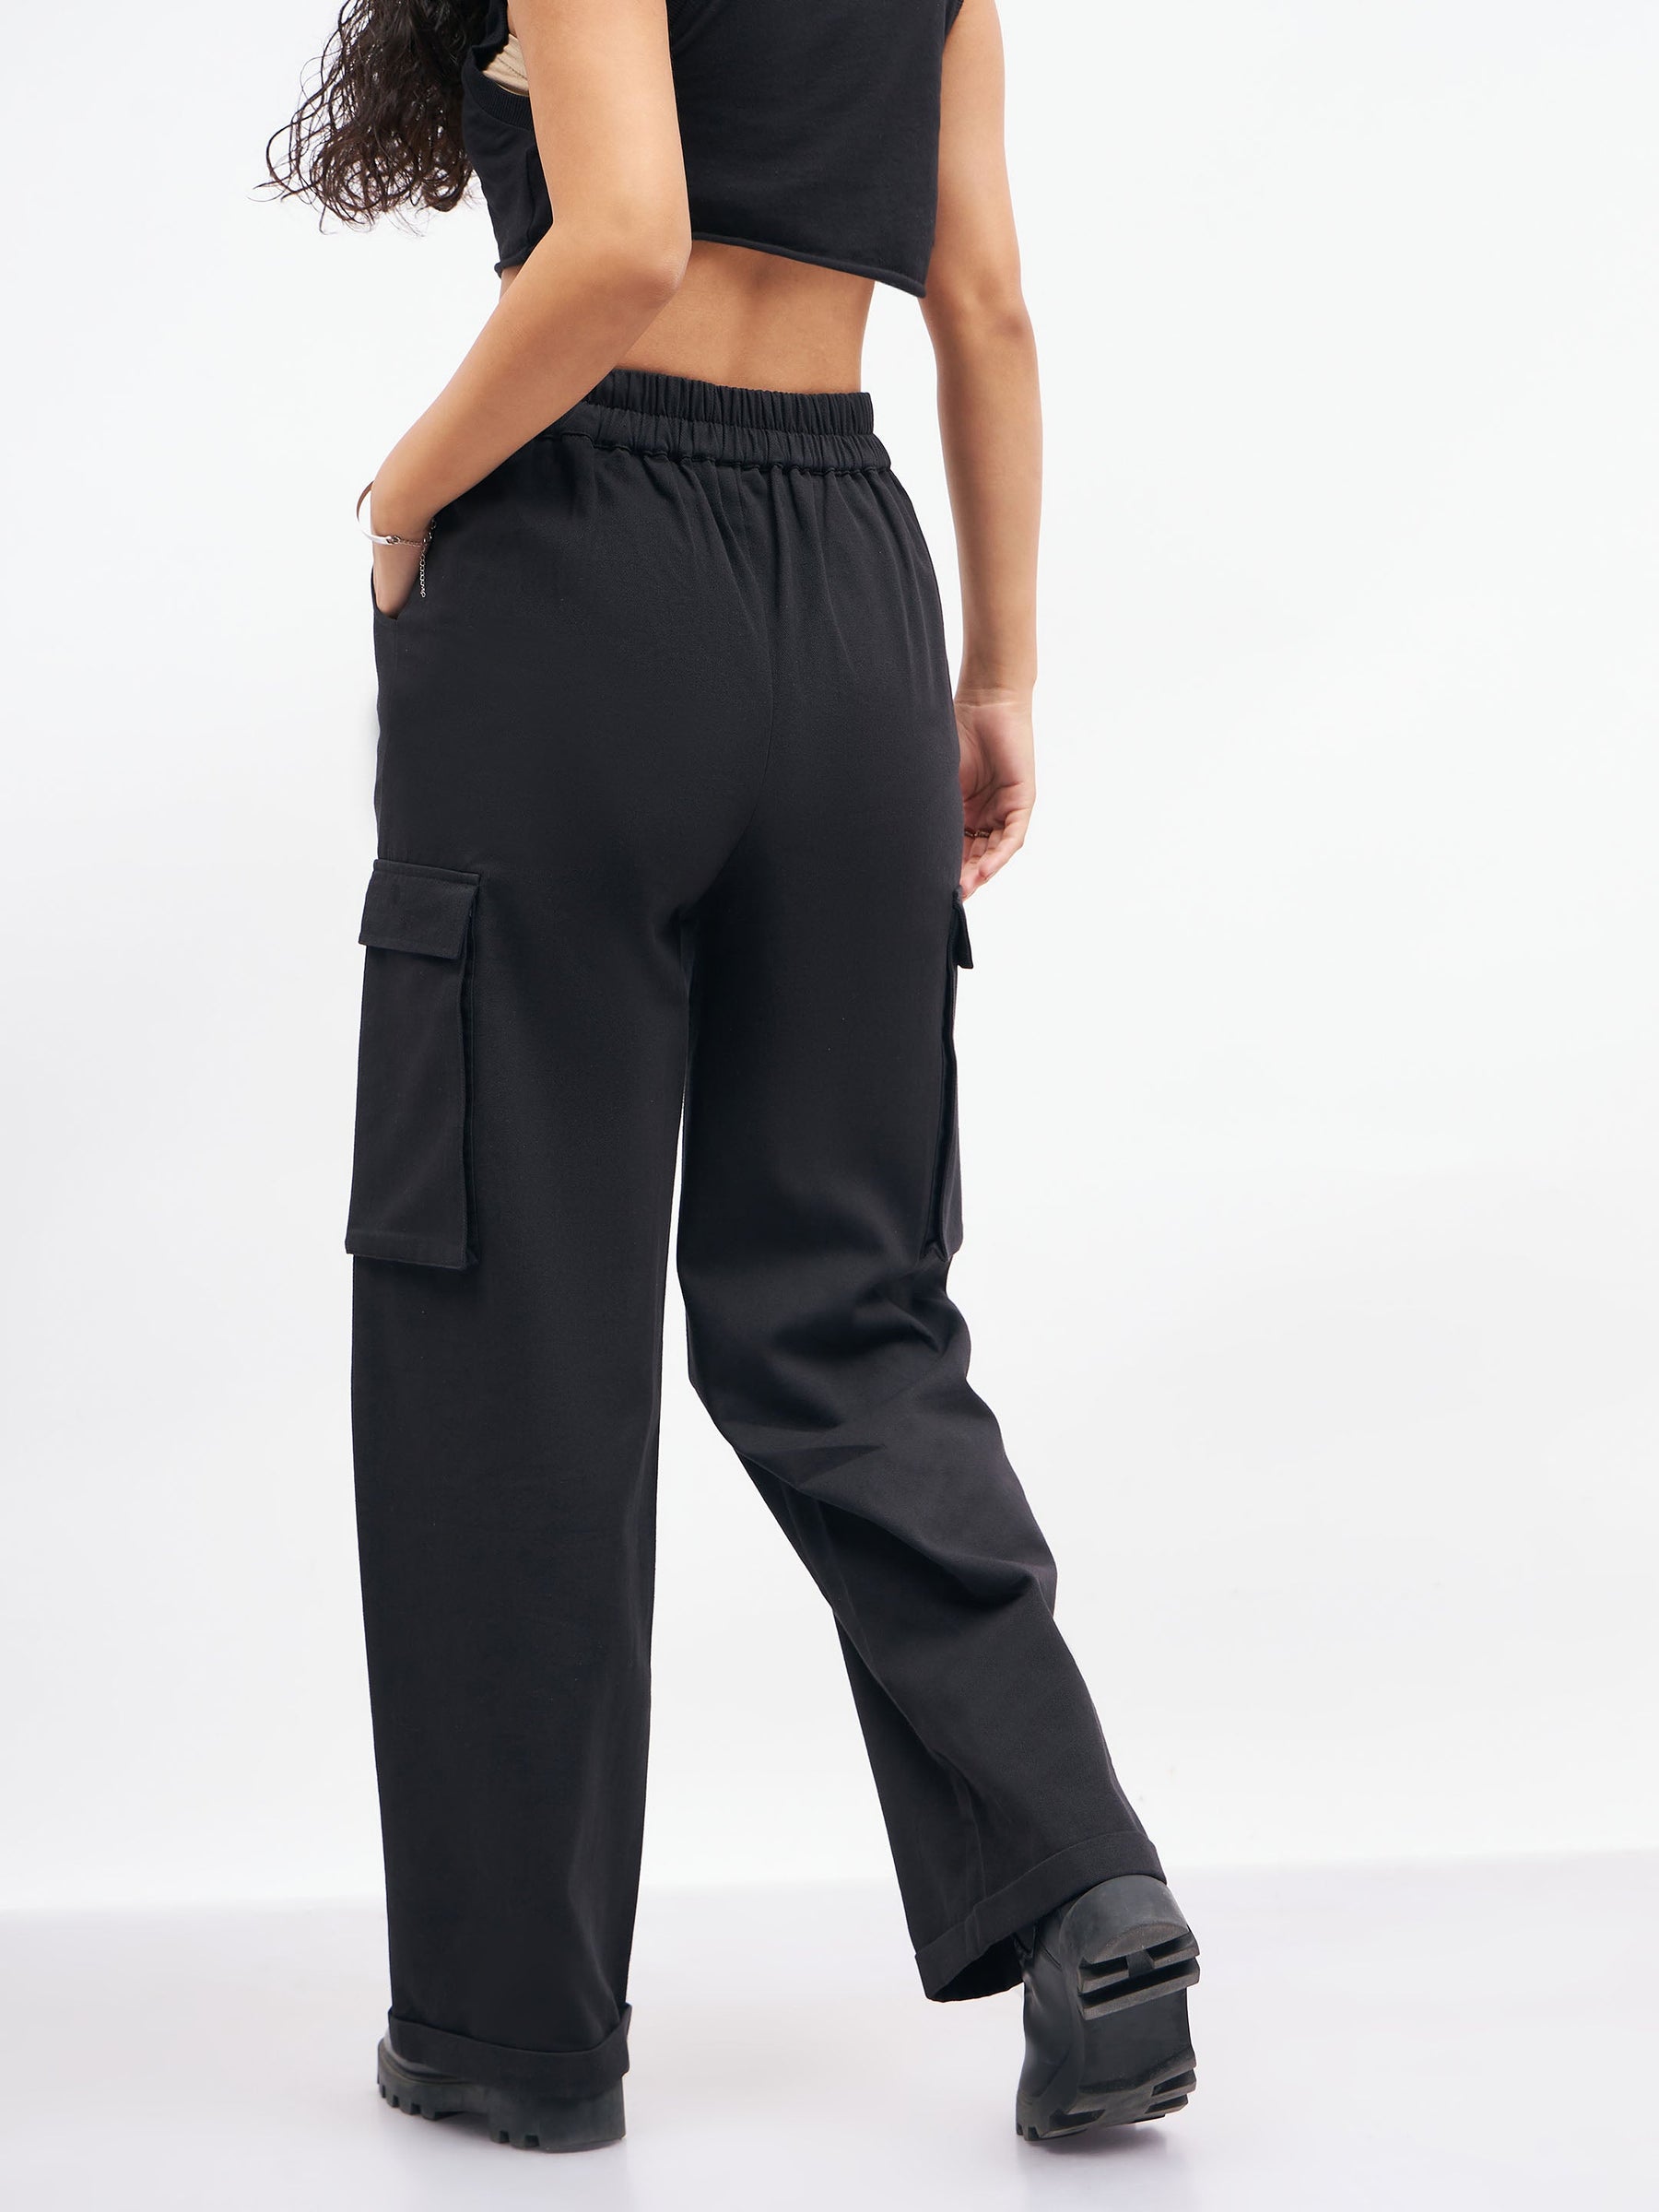 Brilliant Basics Women's Short Length Straight Work Pant - Black